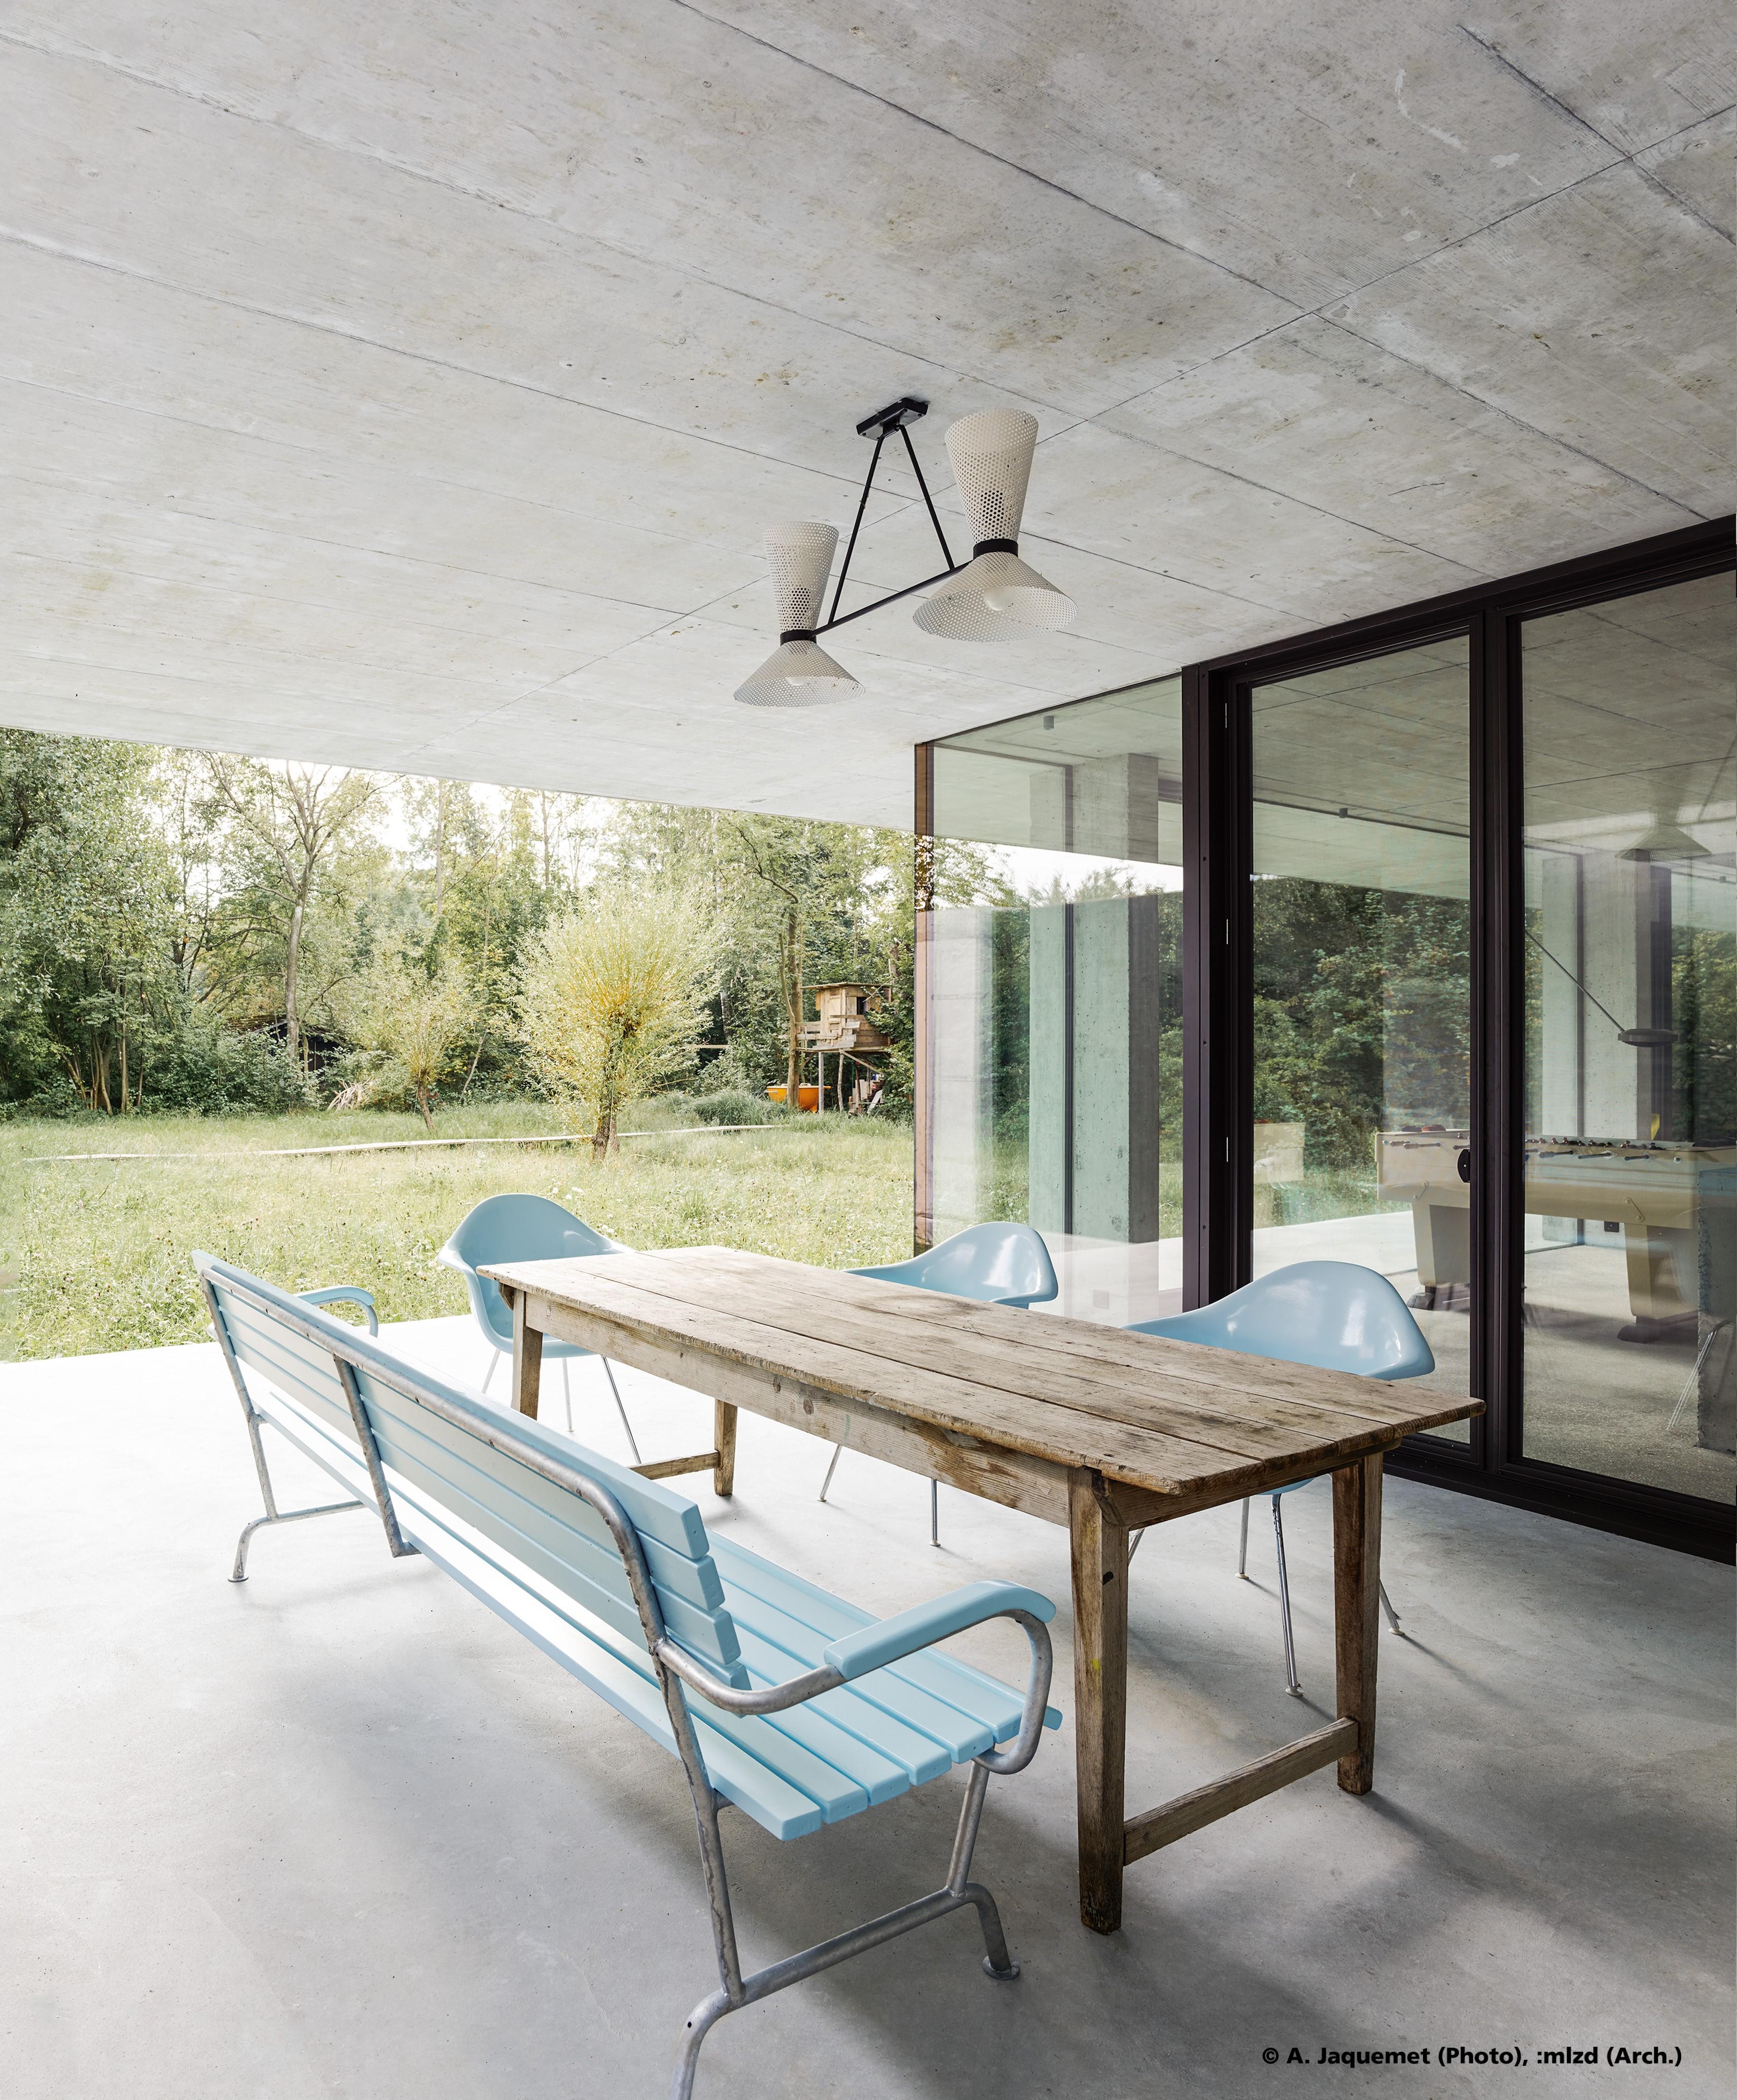  Tisch mit Stühlen und Bank auf einer Terrasse